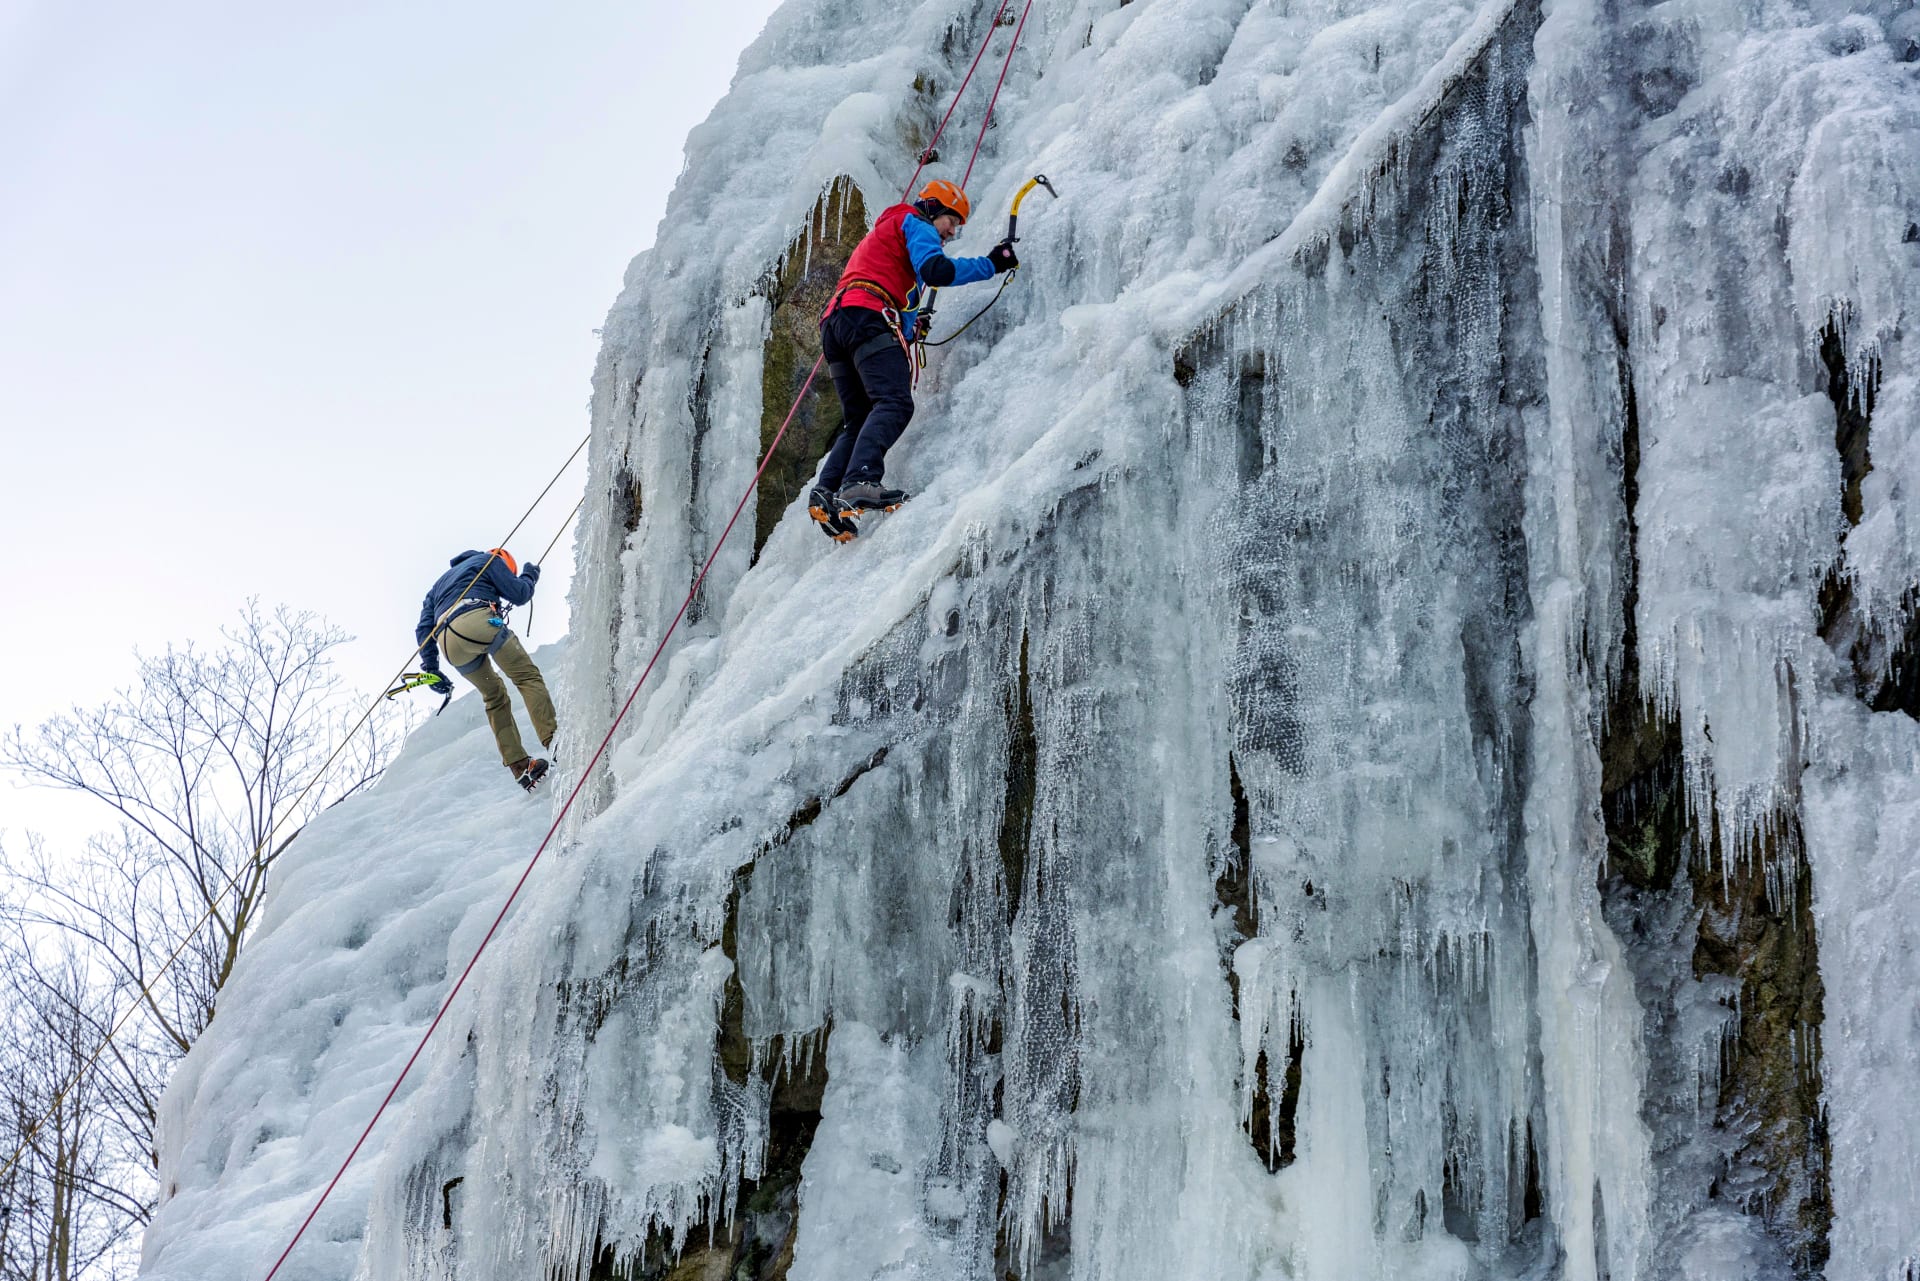 Ledová stěna Vír na Vysočině:  Nejvyšší uměle vytvořený ledový útvar v Evropě je  v mrazivém počasí v obležení lezců, kteří se pokouší zdolat ledové vrcholy.